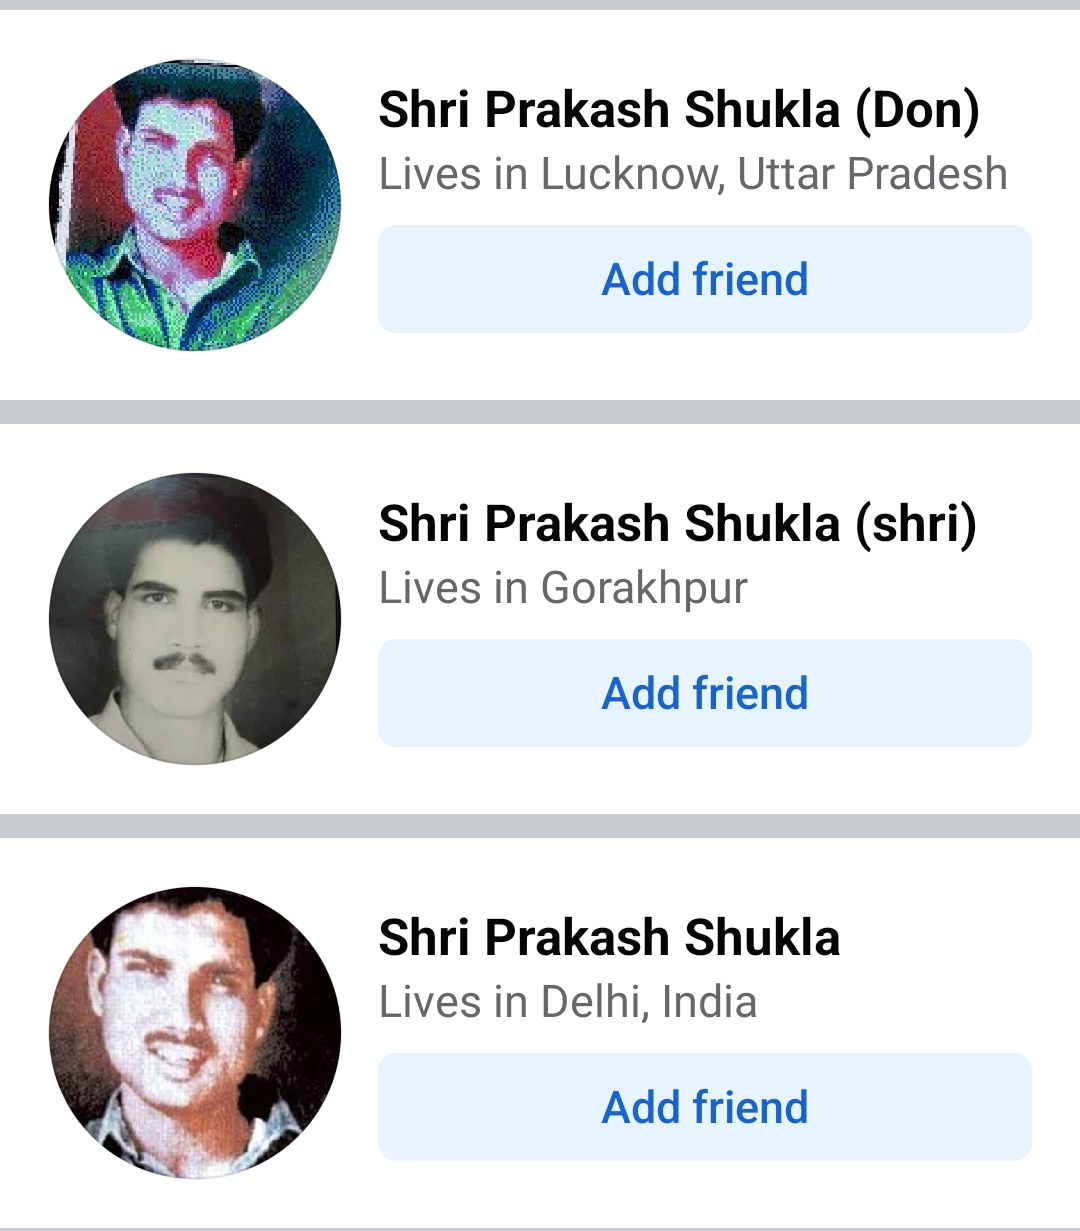 श्रीप्रकाश शुक्ला का फेसबुक पर अकाउंट